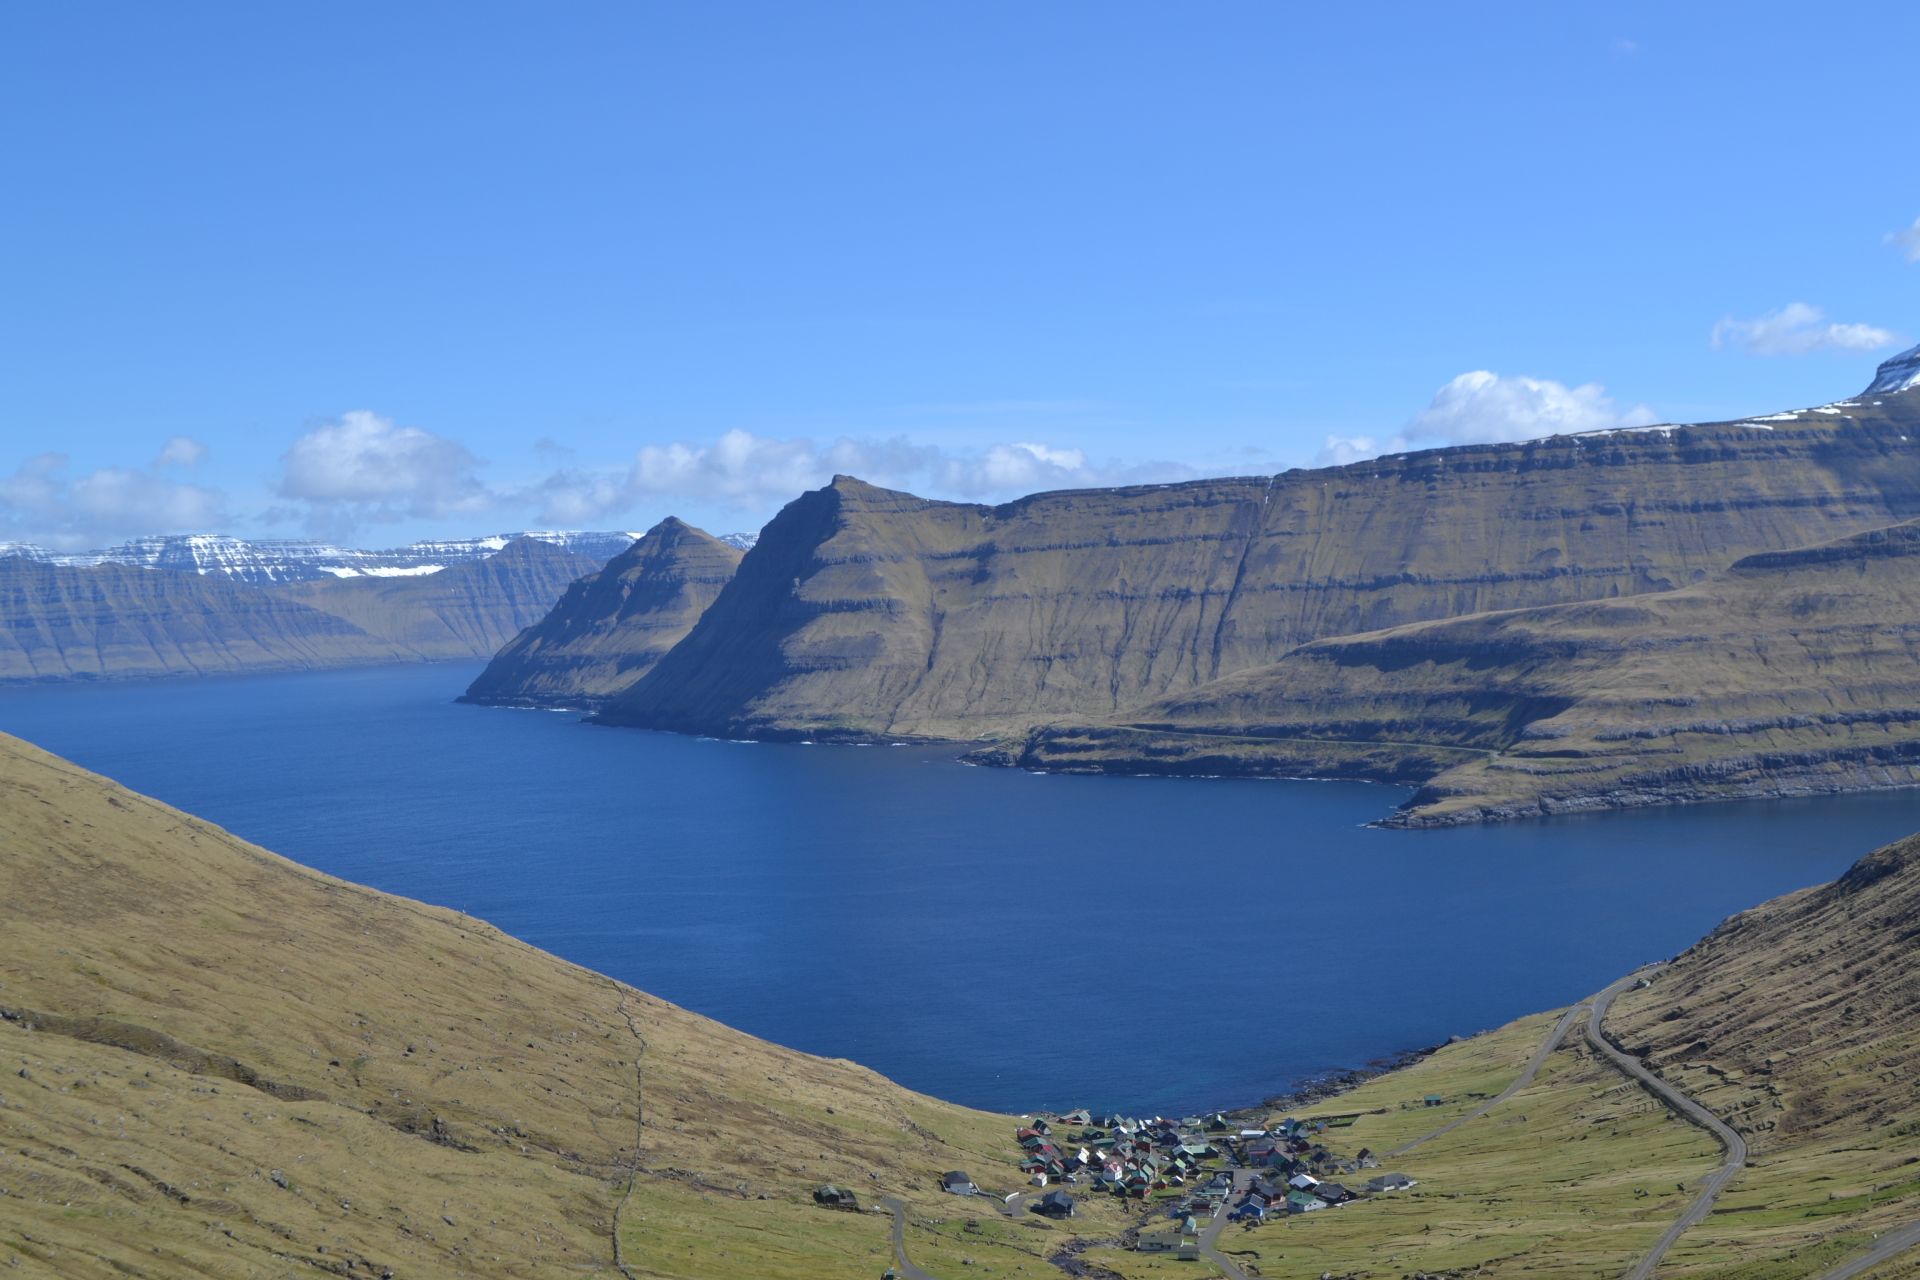 Circuit self-drive în Insulele Feroe: printre localnici, peisaje și wildlife